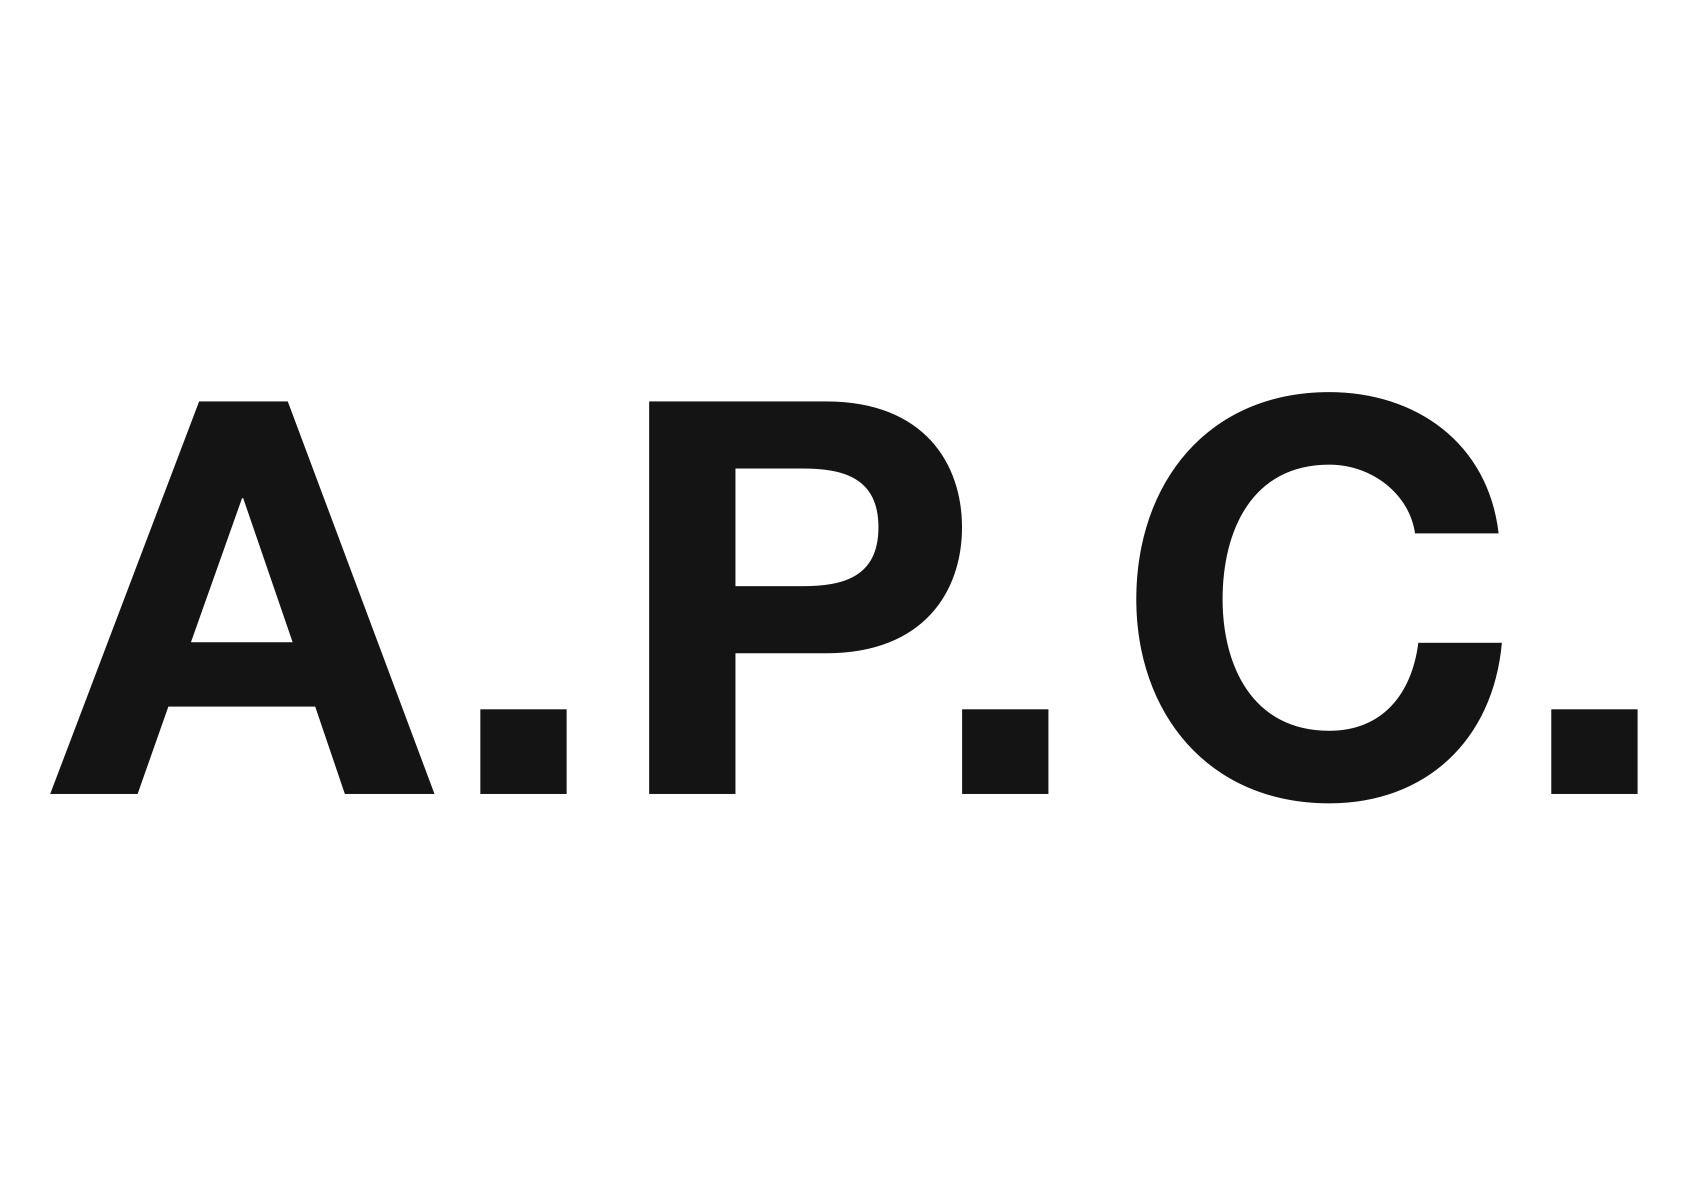 Jean Shop Logo - A.P.C. The Denim Shop Online Denim Shop